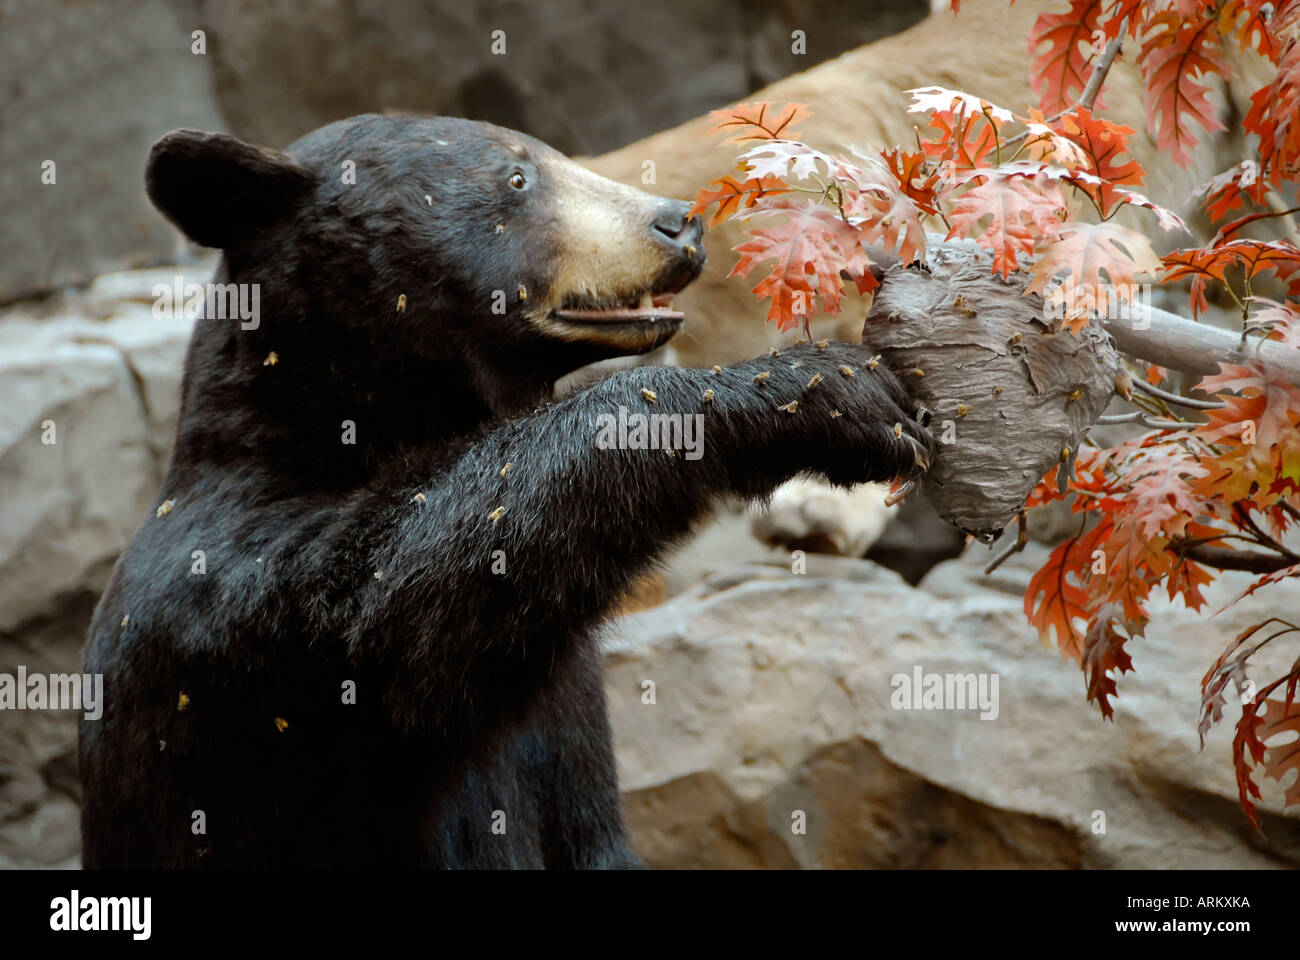 Großen schwarzen Bären auf Bienen nisten essen Honig Stockfotografie - Alamy